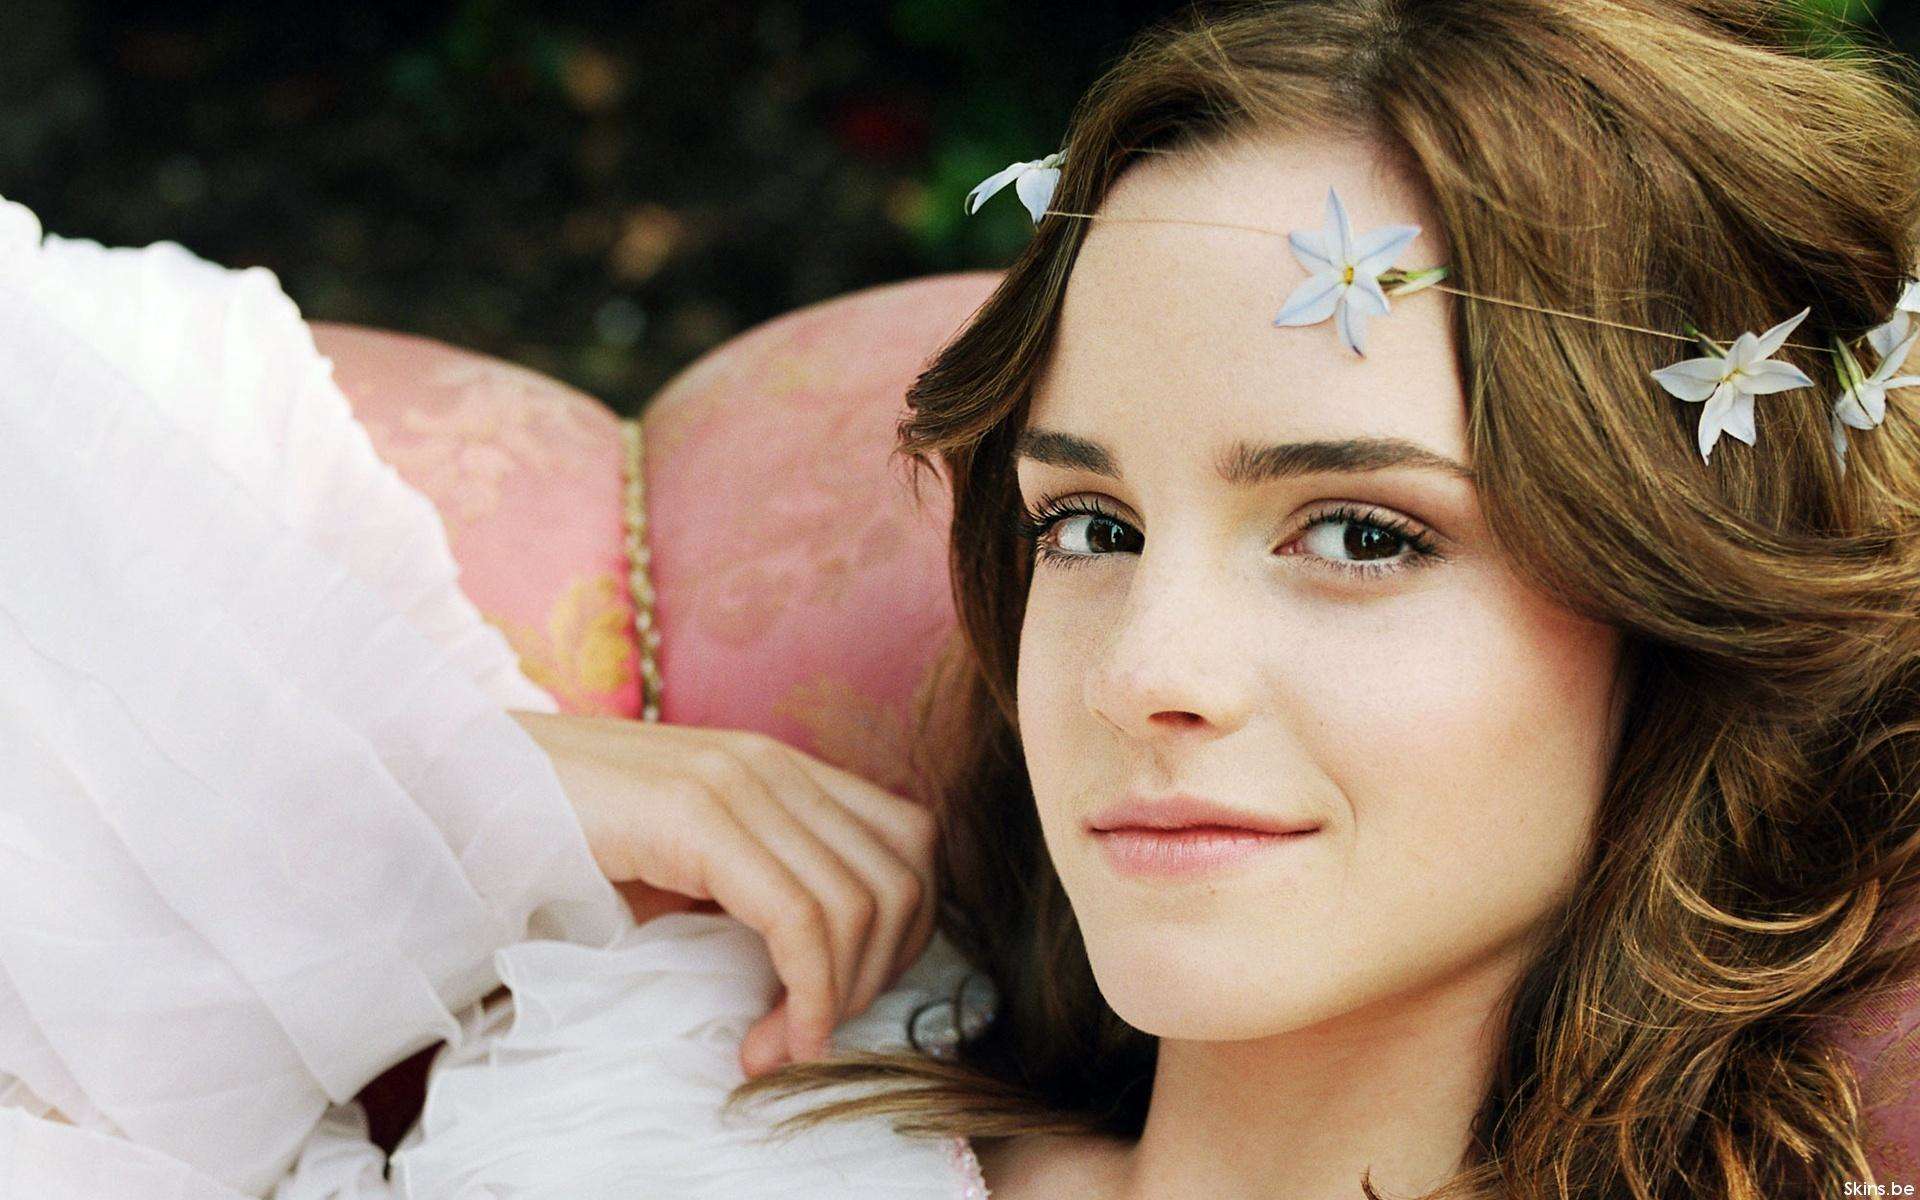 Emma Watson: क्या अभिनय को अलविदा कह रही हैरी पॉटर फेम एमा वॉटसन, जानें सच्चाई